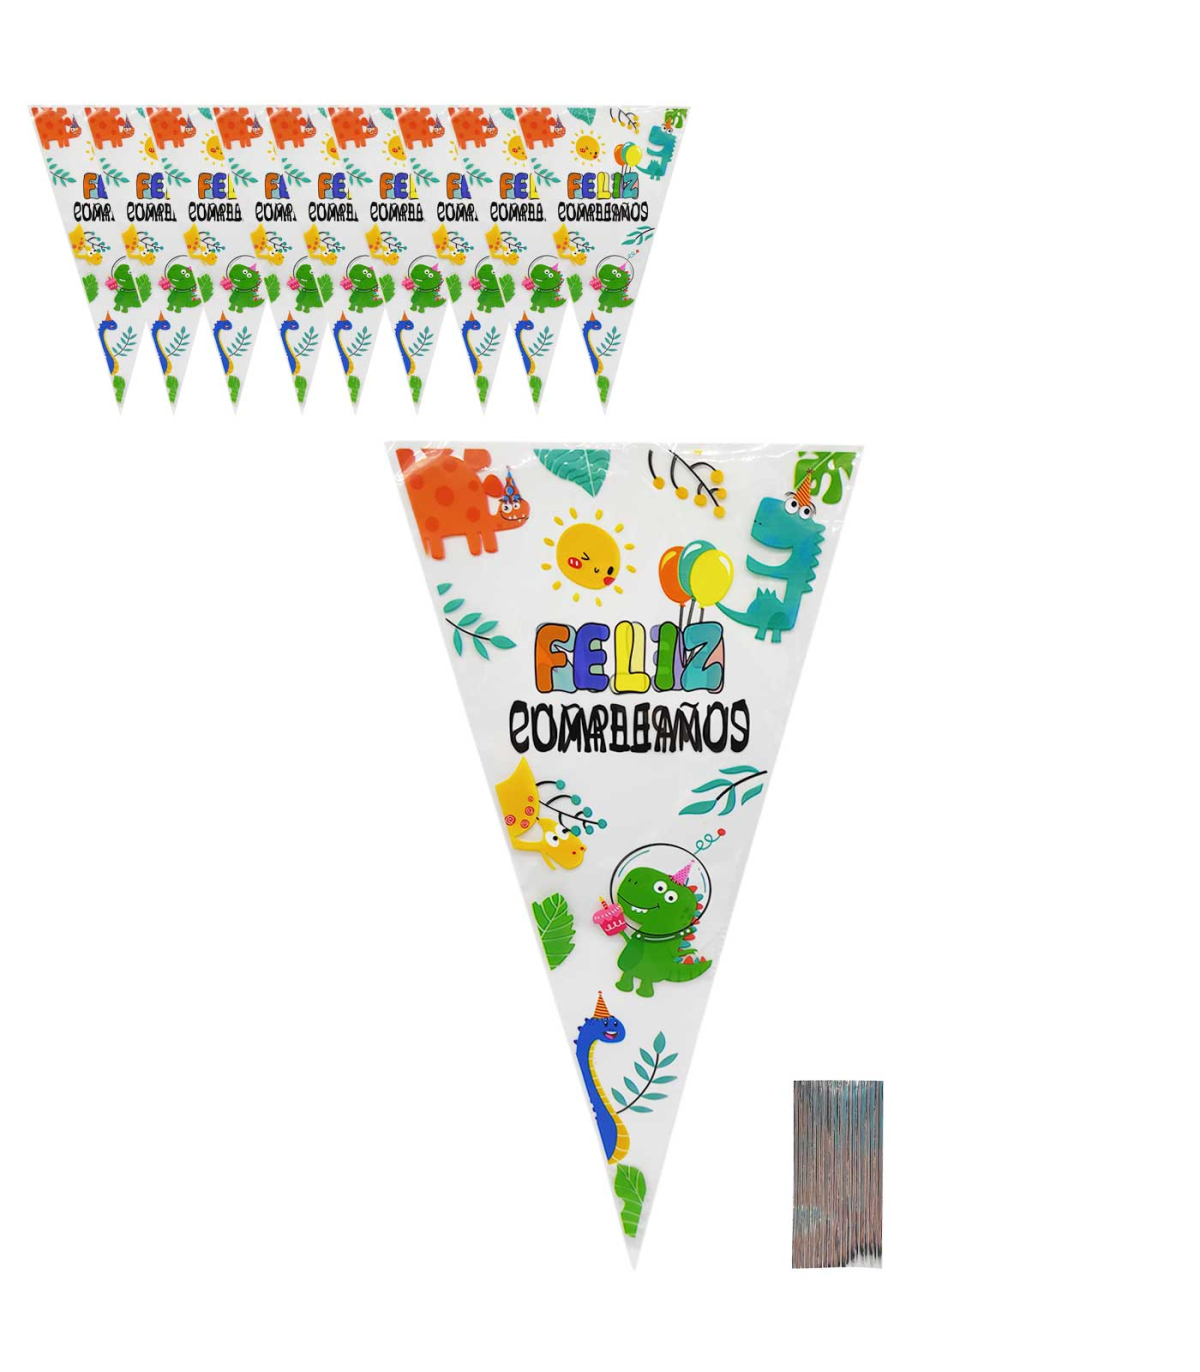 Tradineur - Pack de 10 bolsas de plástico para caramelos Feliz cumpleaños,  incluyen tiras de cierre, bolsas para regalar golos